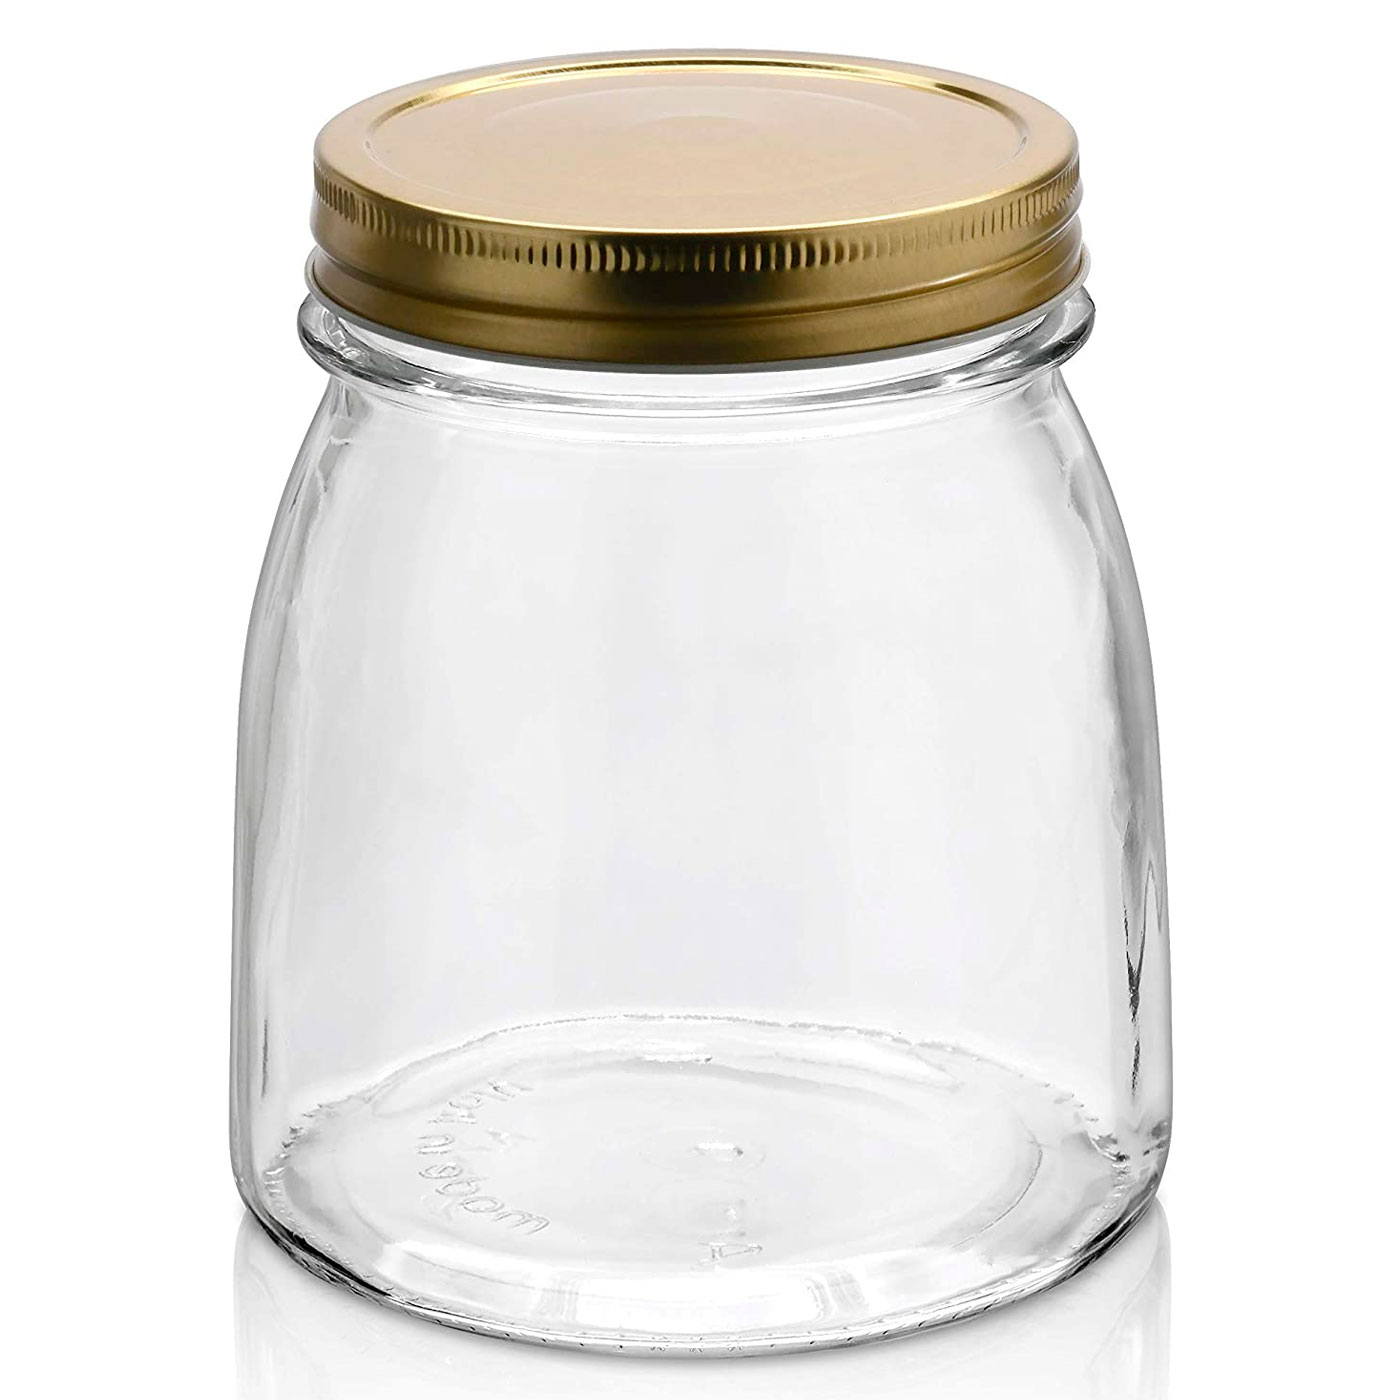 Tradineur - Tarro hermético de vidrio con cierre metálico, bote, frasco  multiusos para alimentos, conservas, legumbres, pasta, 2